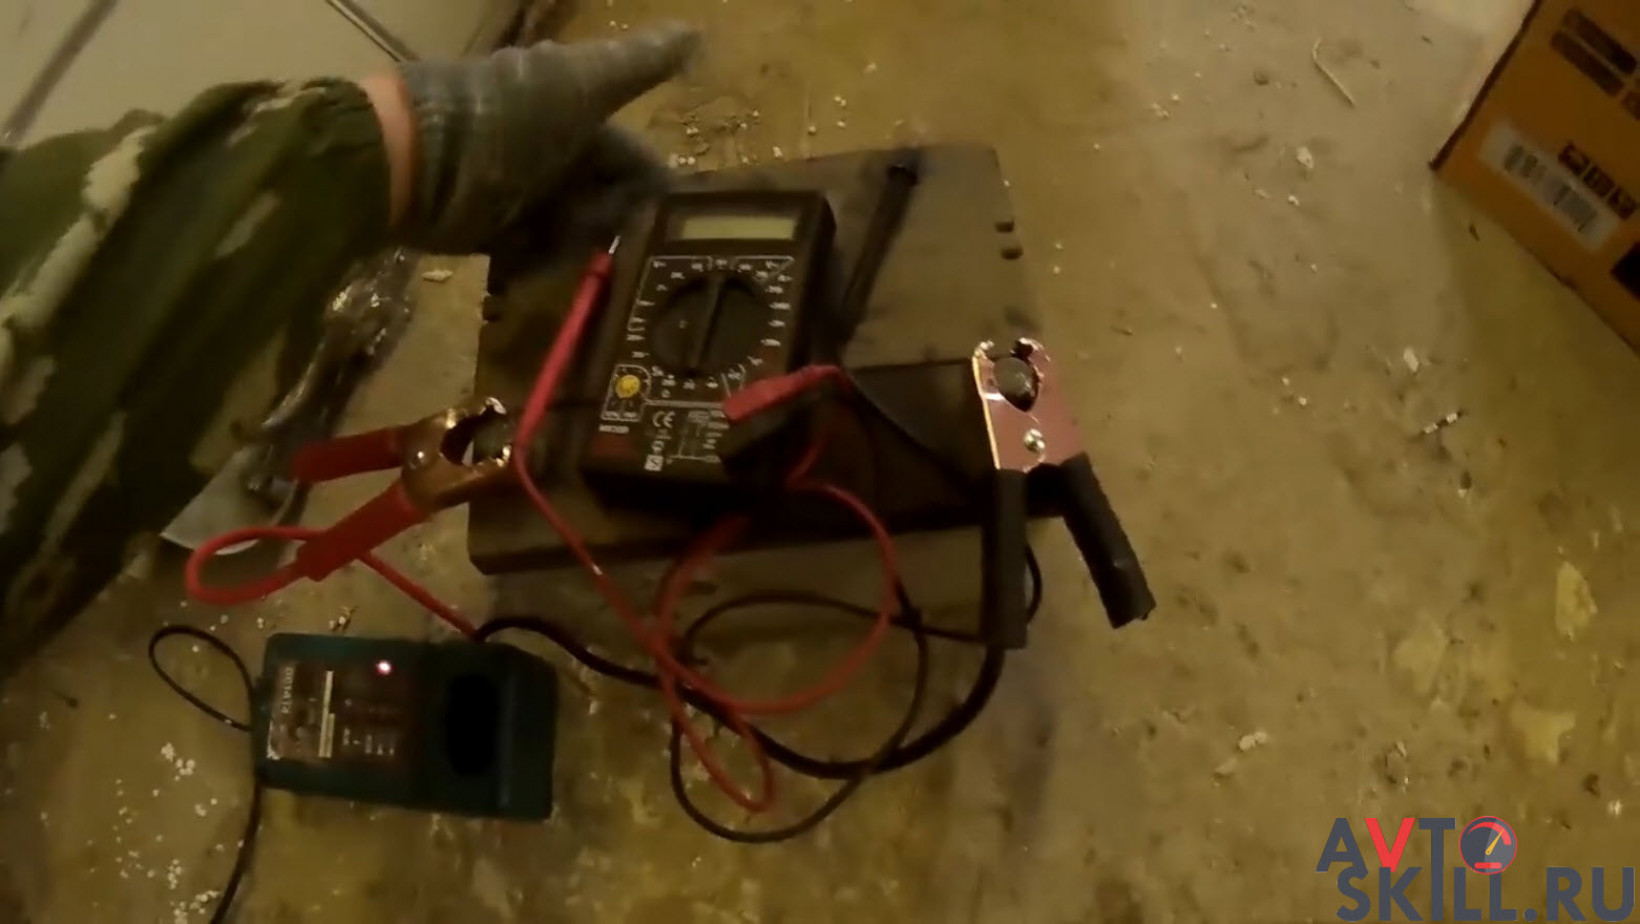 Как заряжать аккумулятор шуруповерта без зарядного устройства - инженер пто